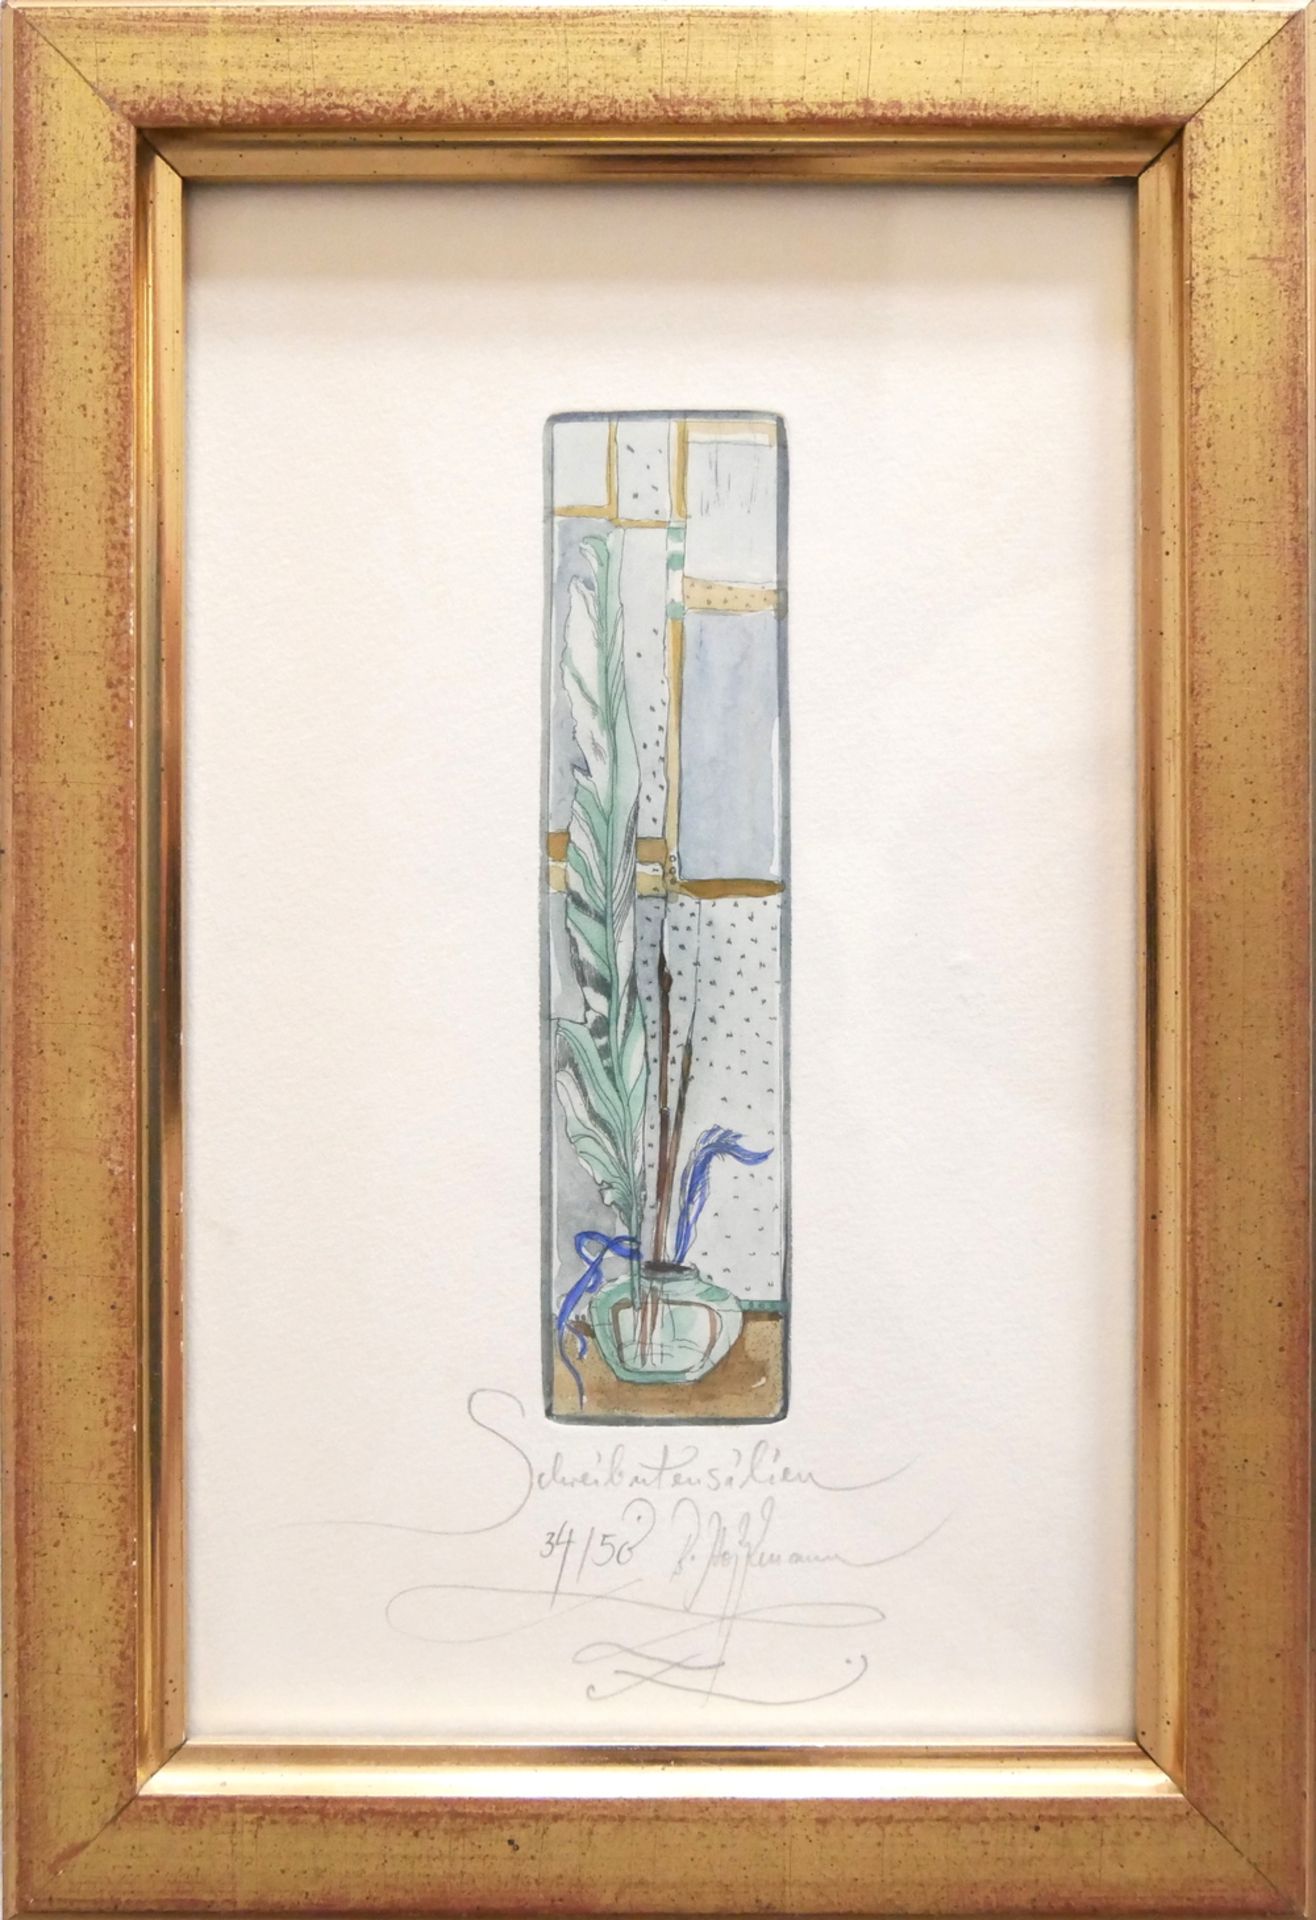 Aquarell "Schreibuntensilien", 34/50 von B. Hoffmann, hinter Glas gerahmt, Signatur unten mittig,